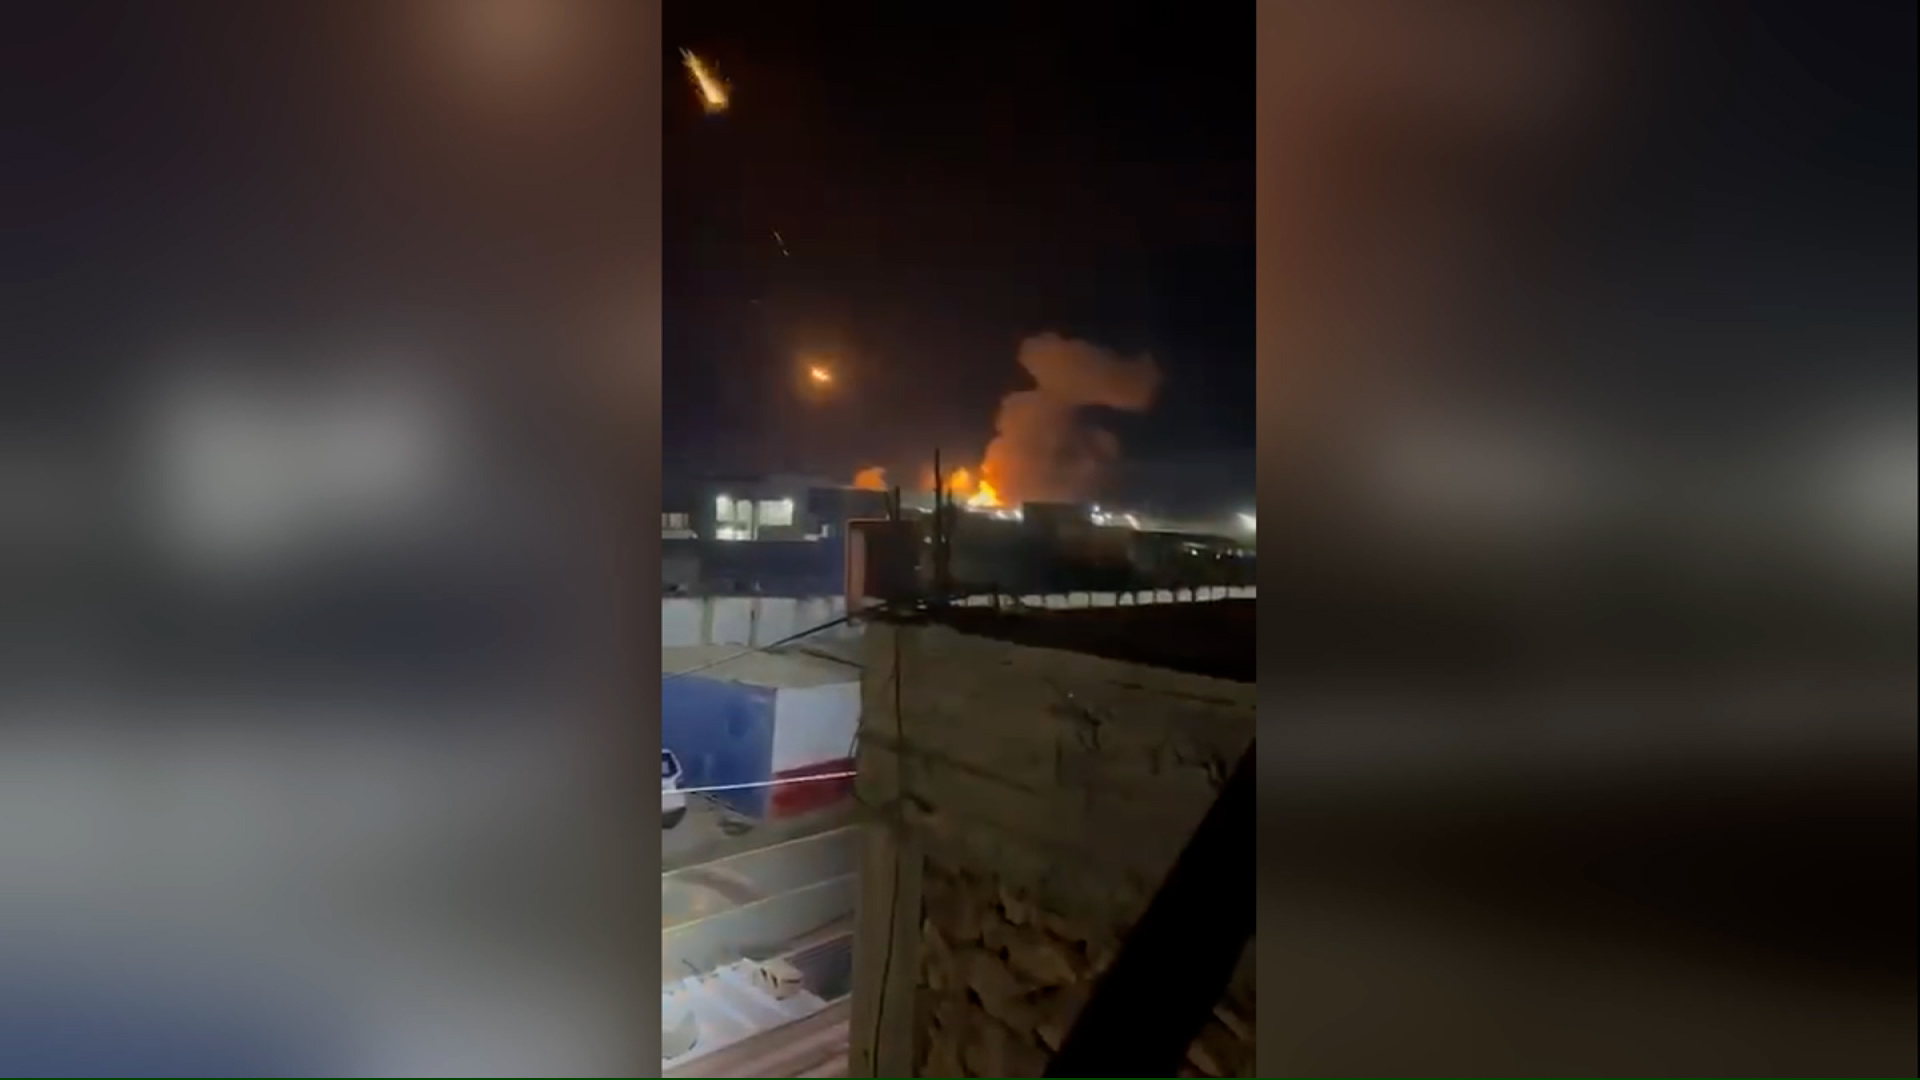 Zrzut ekranu z filmu, geolokalizowanego przez CNN do miasta Qaim w Iraku, pokazuje następstwa amerykańskich ataków wojskowych na ten obszar, według irackiej armii.  Trafiono w pozorny skład broni, a w niebo wystrzelono kilka flar z pocisków.